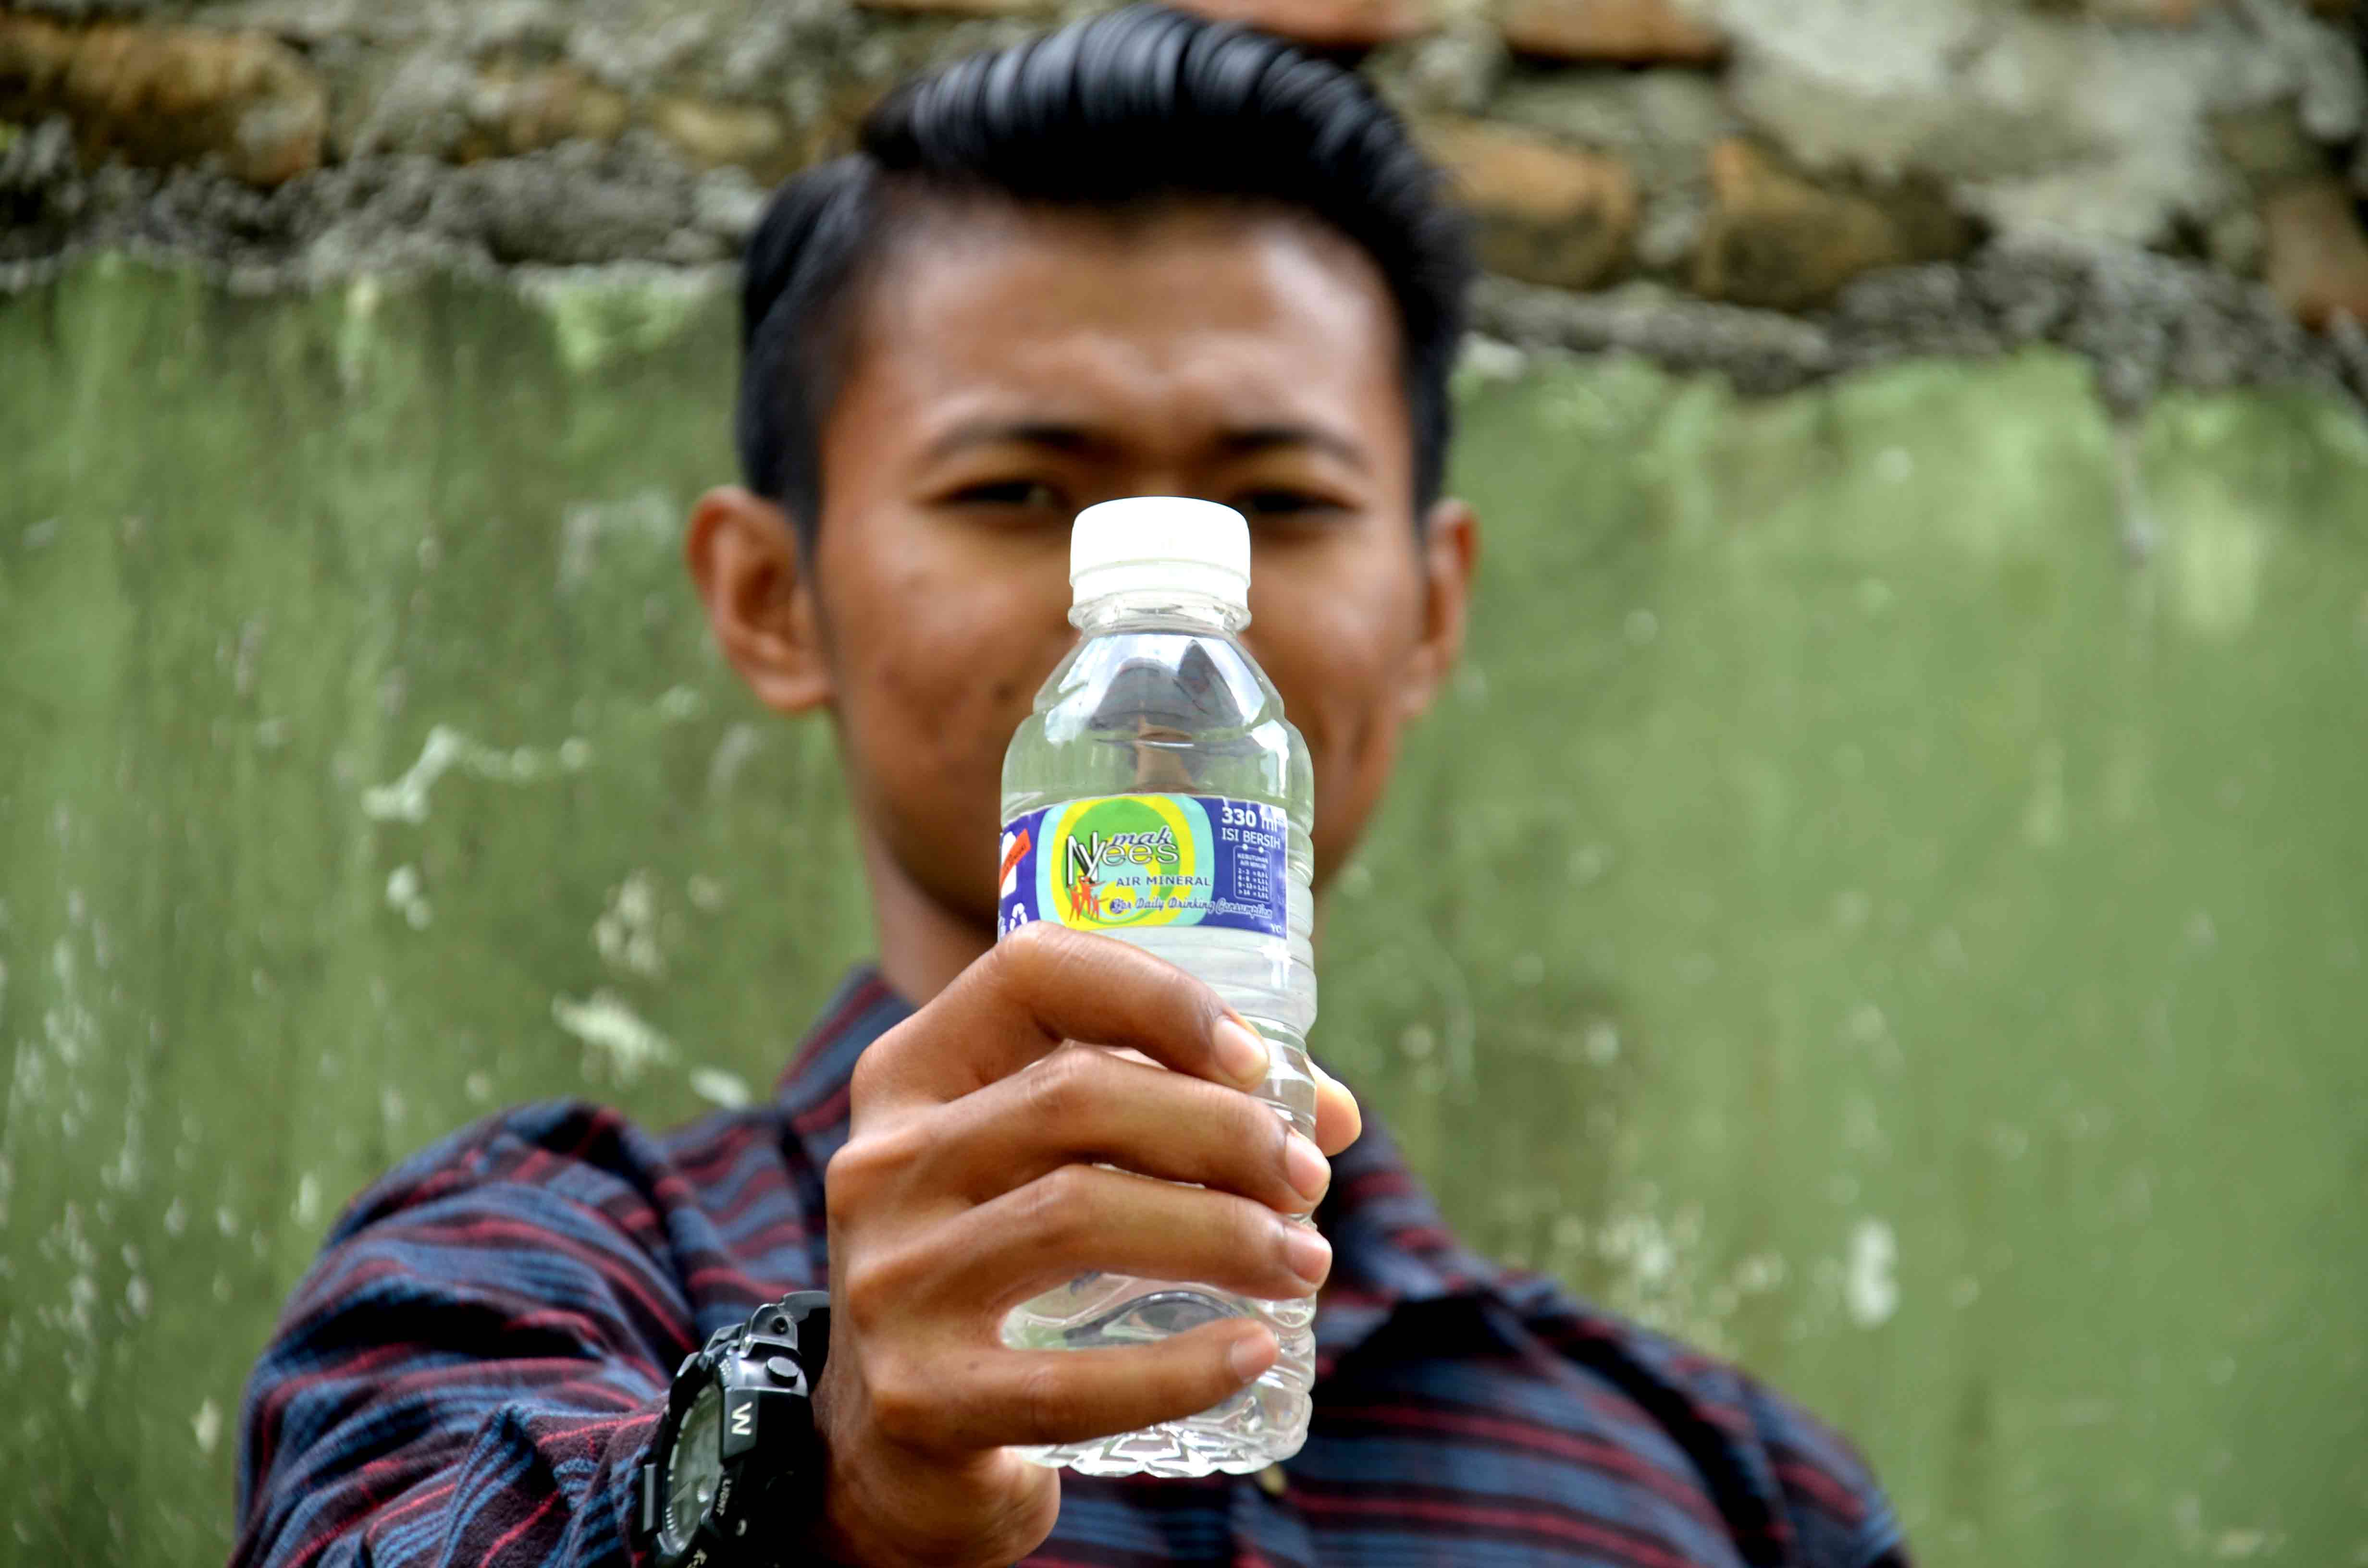 Air Siap Minum Lokal Karya Warga Terban